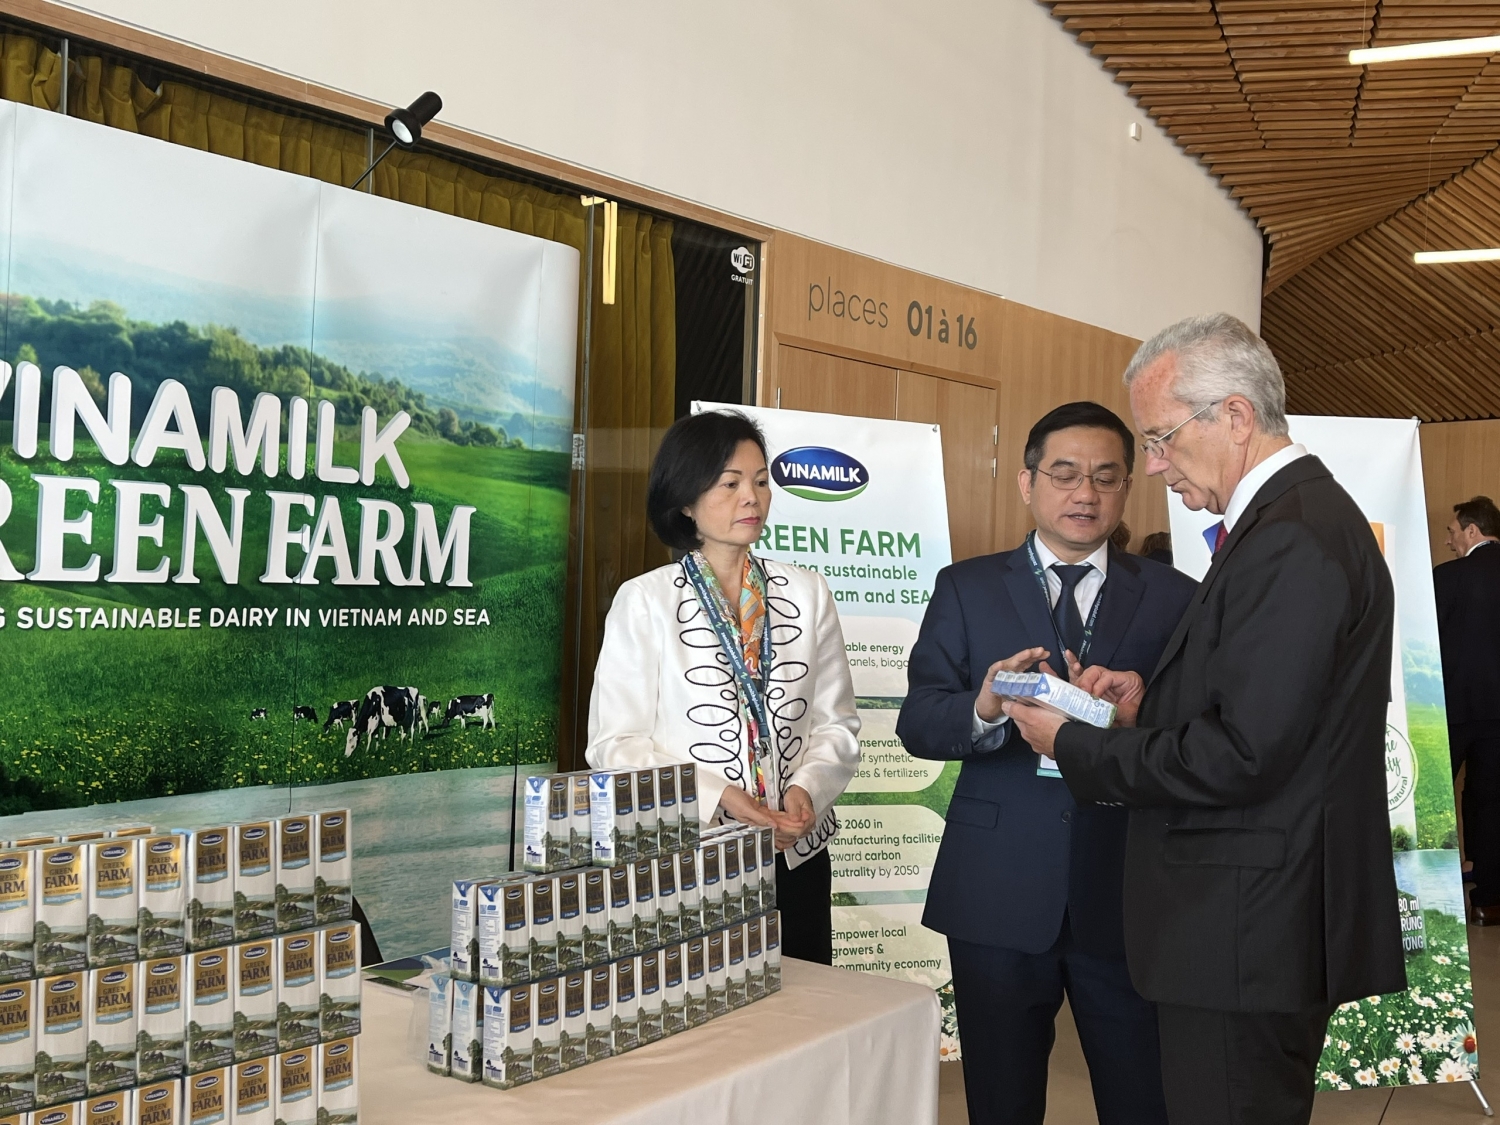 Ông Richard Hall và các đại diện Vinamilk trao đổi thêm về mô hình Green Farm đã được Vinamilk xây dựng tại Việt Nam